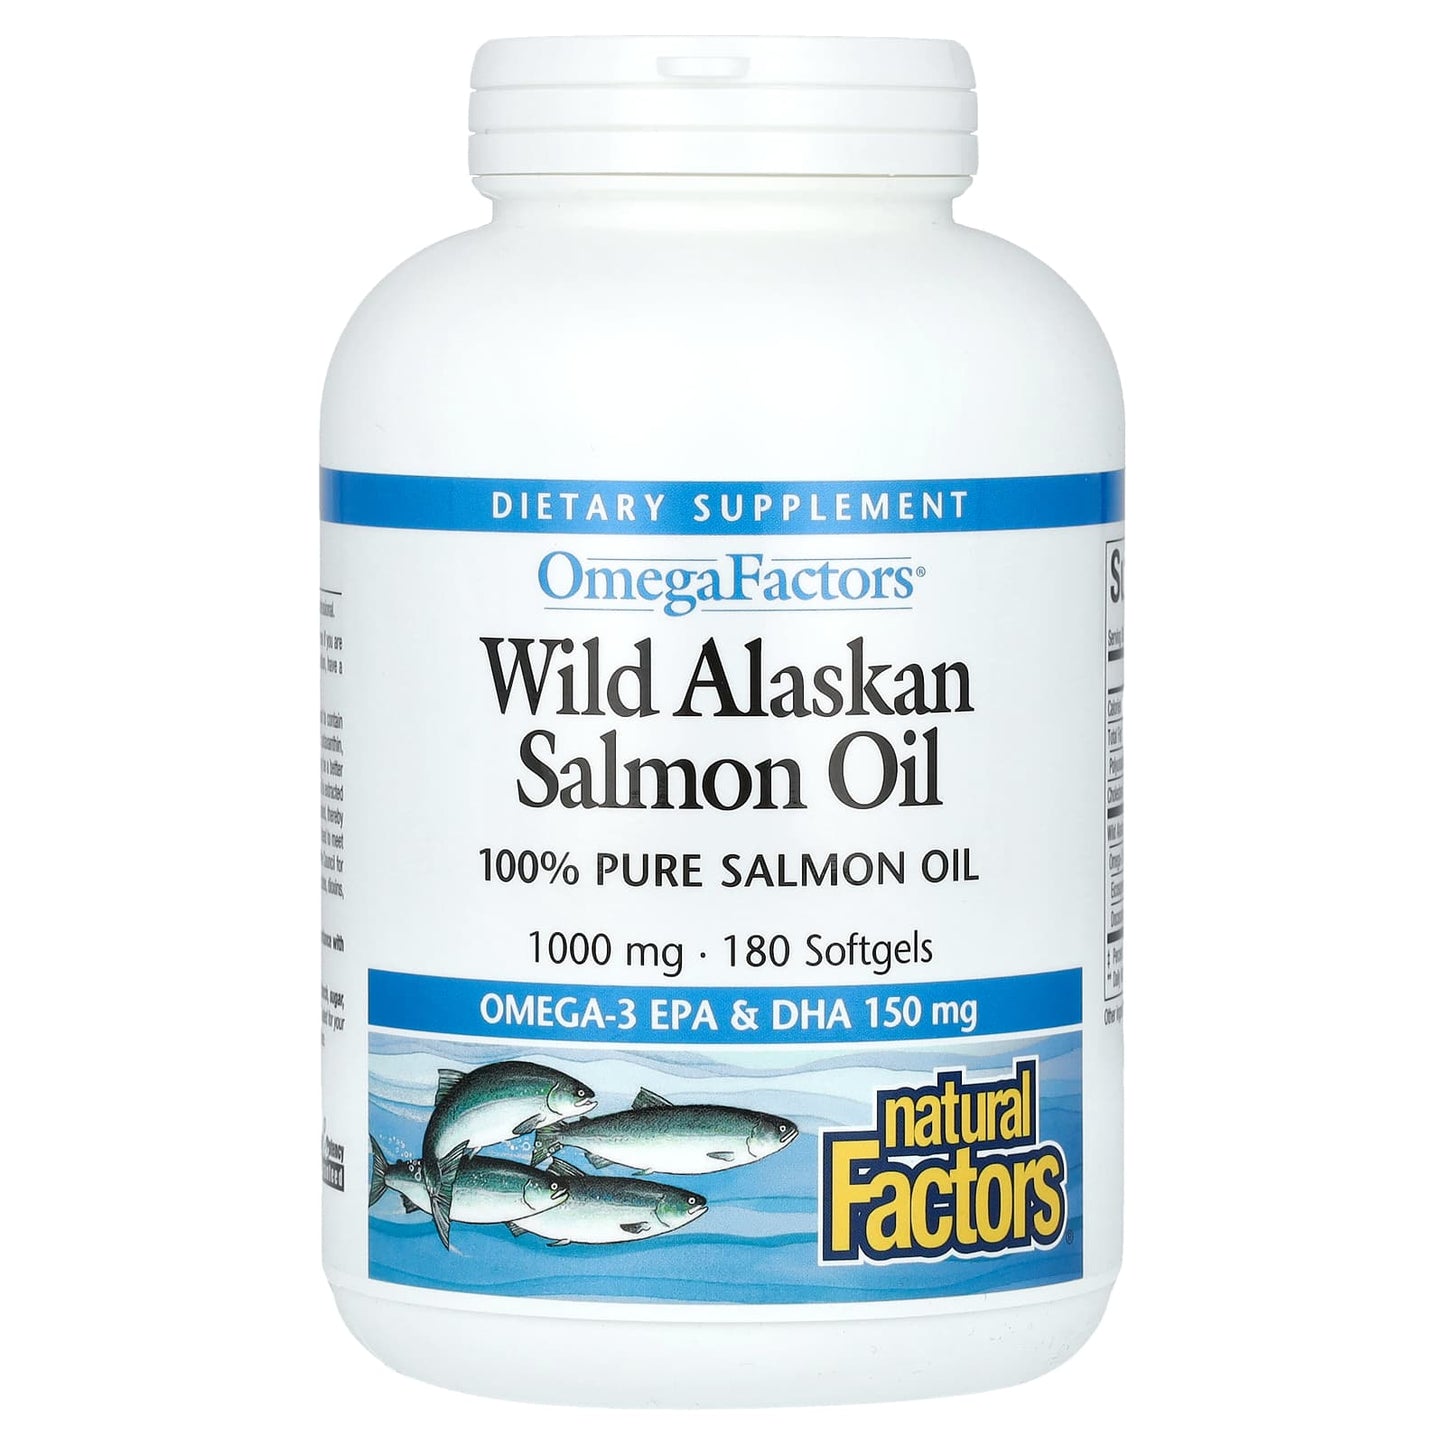 Natural Factors-OmegaFactors-Wild Alaskan Salmon Oil-1,000 mg-180 Softgels